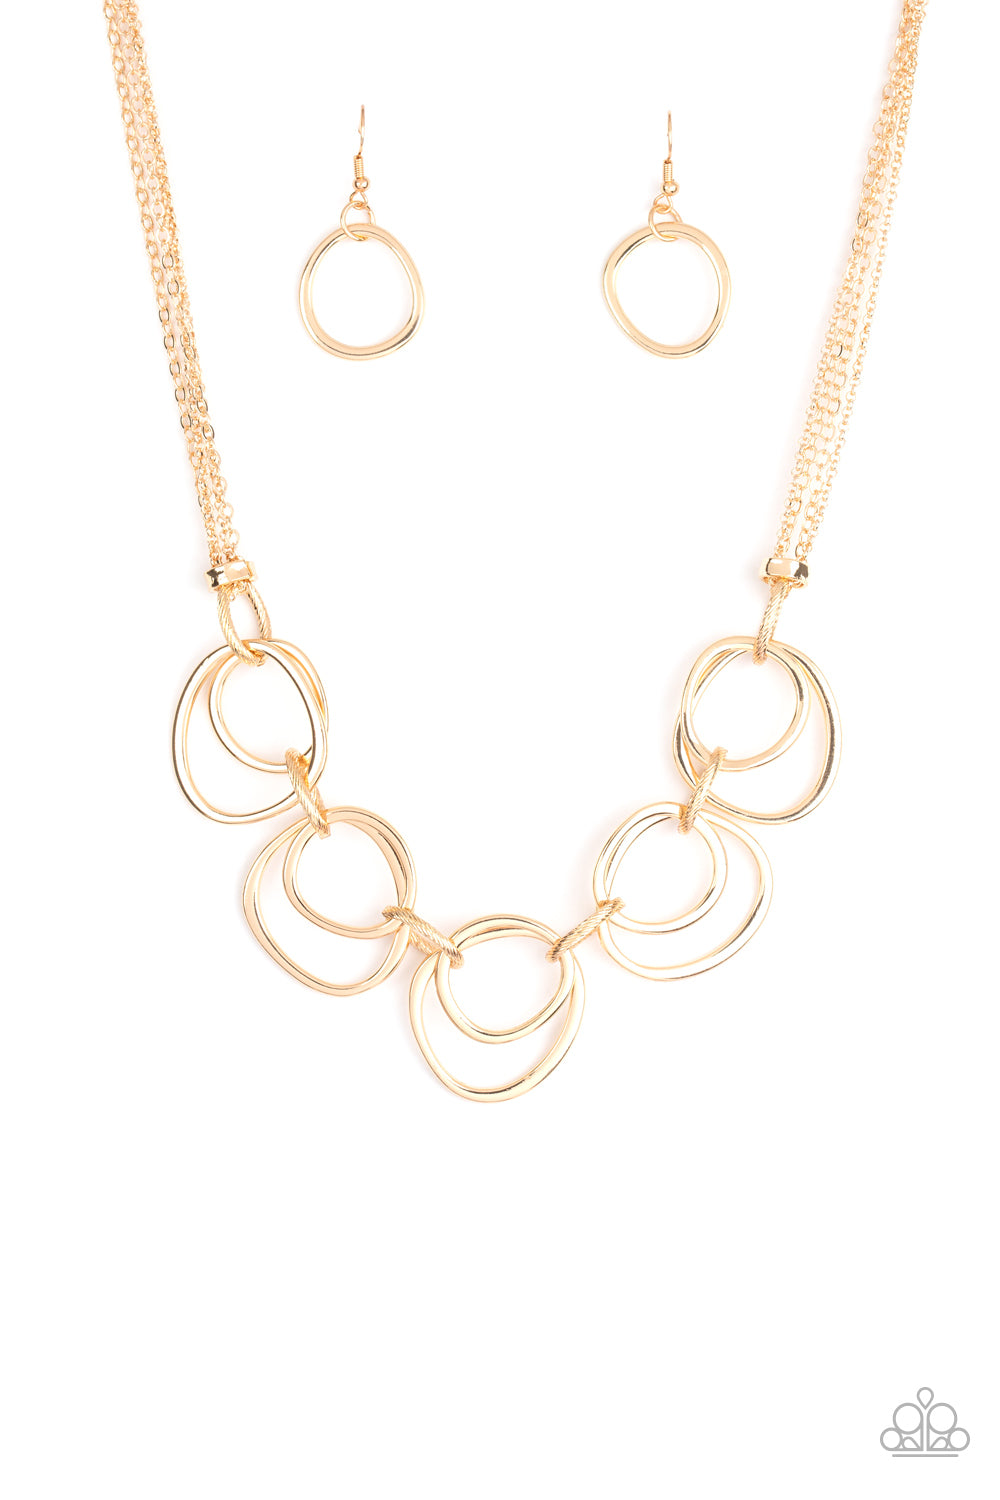 Asymmetrical Adornment - gold - Paparazzi necklace